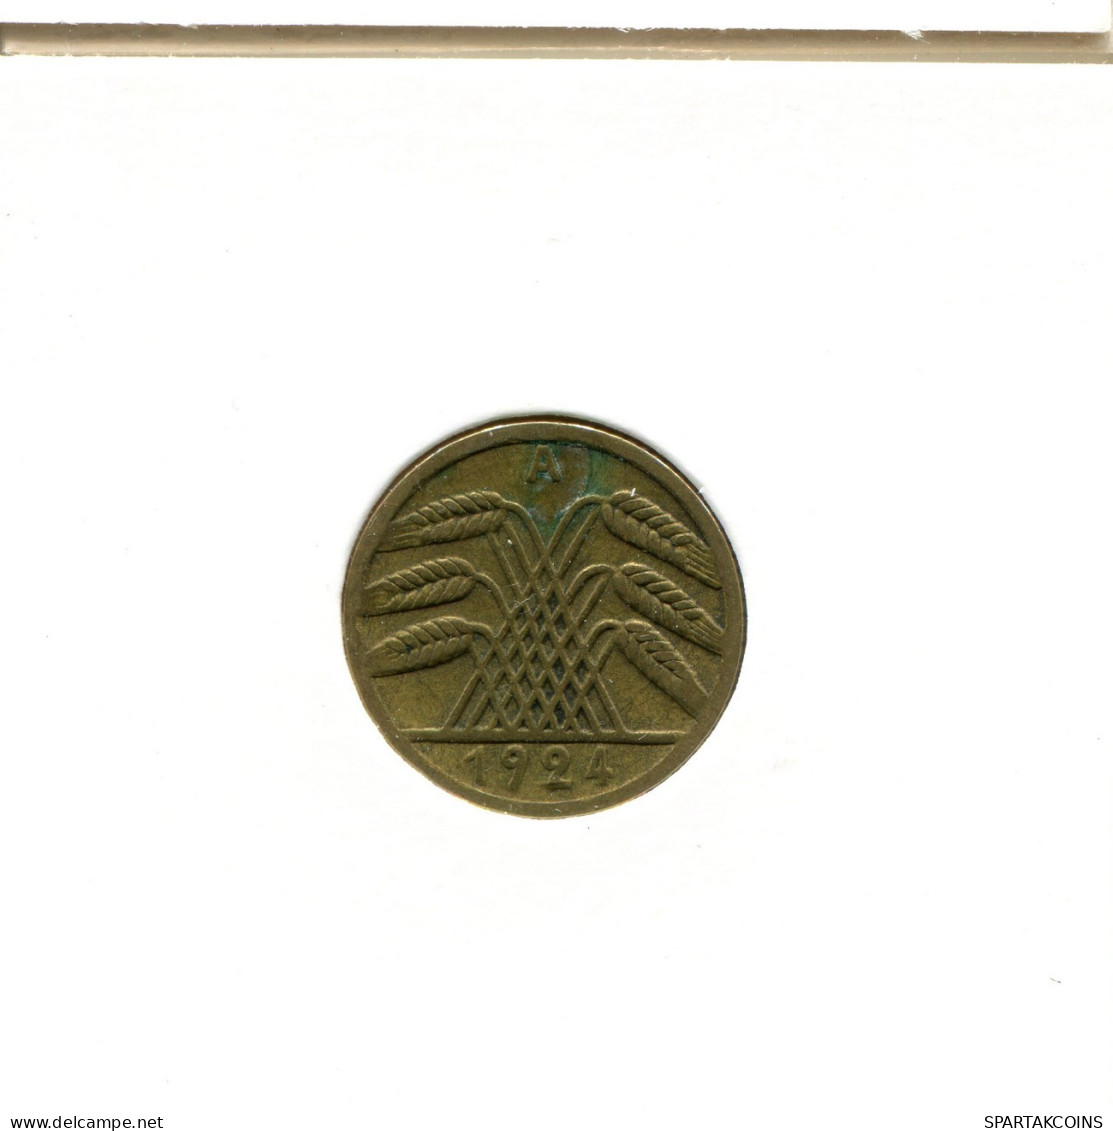 5 RENTENPFENNIG 1924 A ALEMANIA Moneda GERMANY #AX530.E.A - 5 Rentenpfennig & 5 Reichspfennig